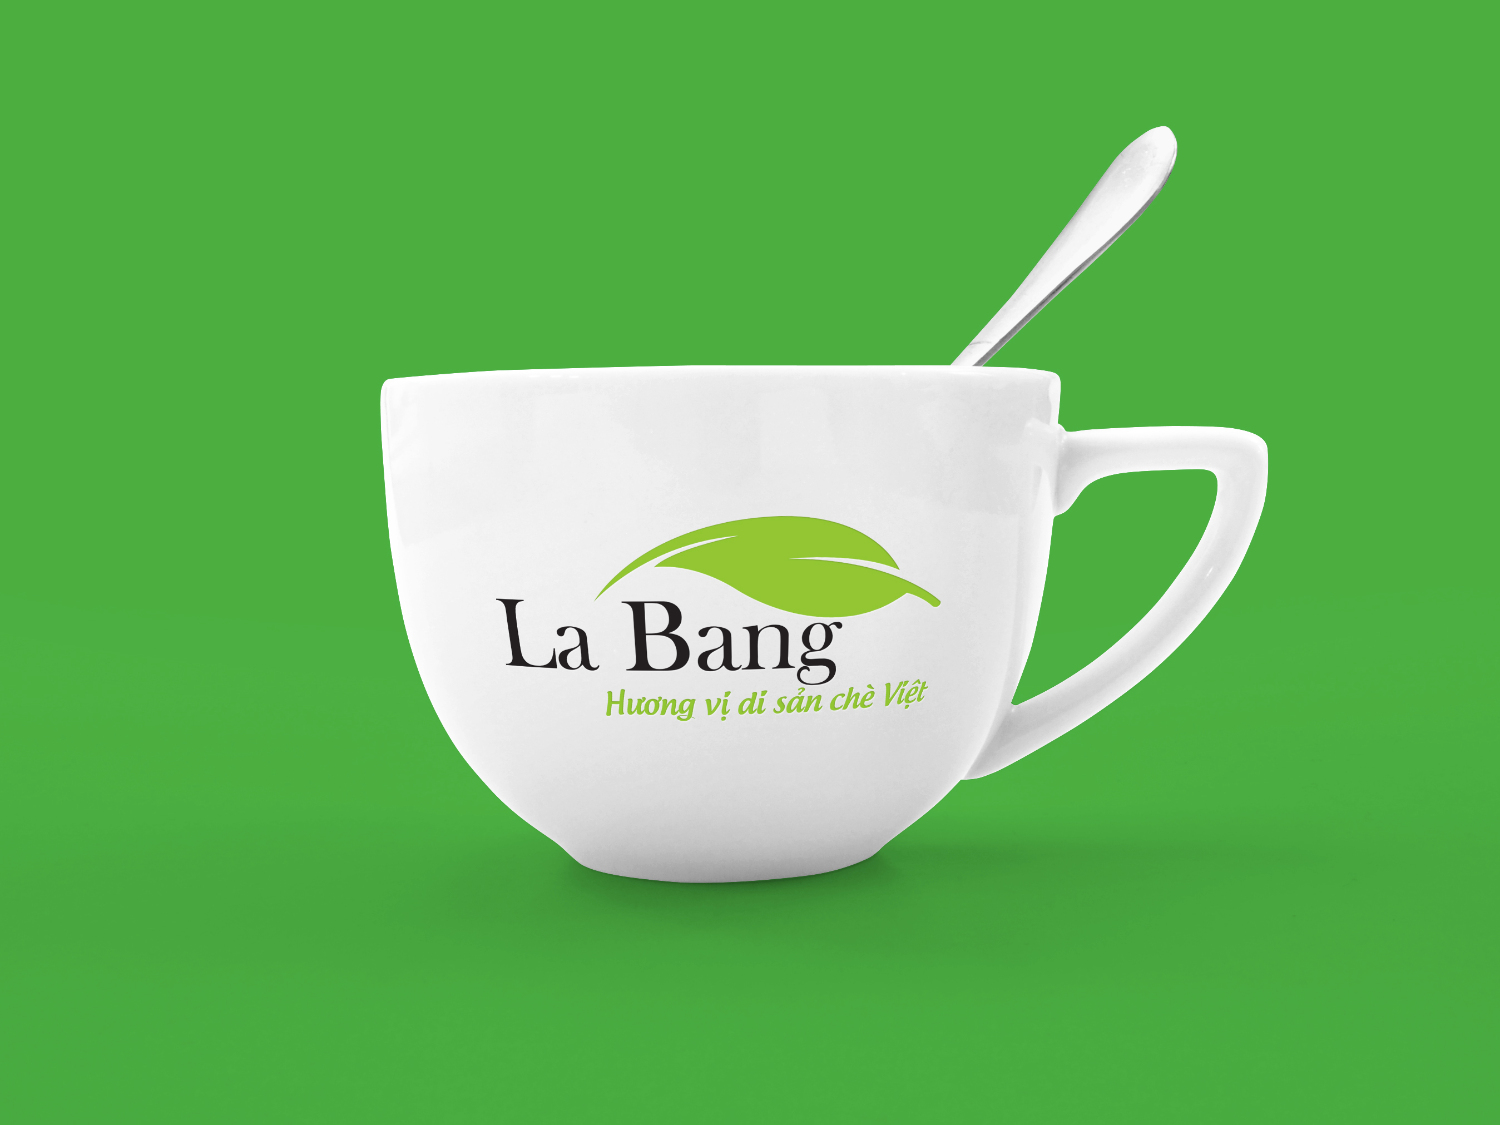 Thiet ke logo La Bang 4